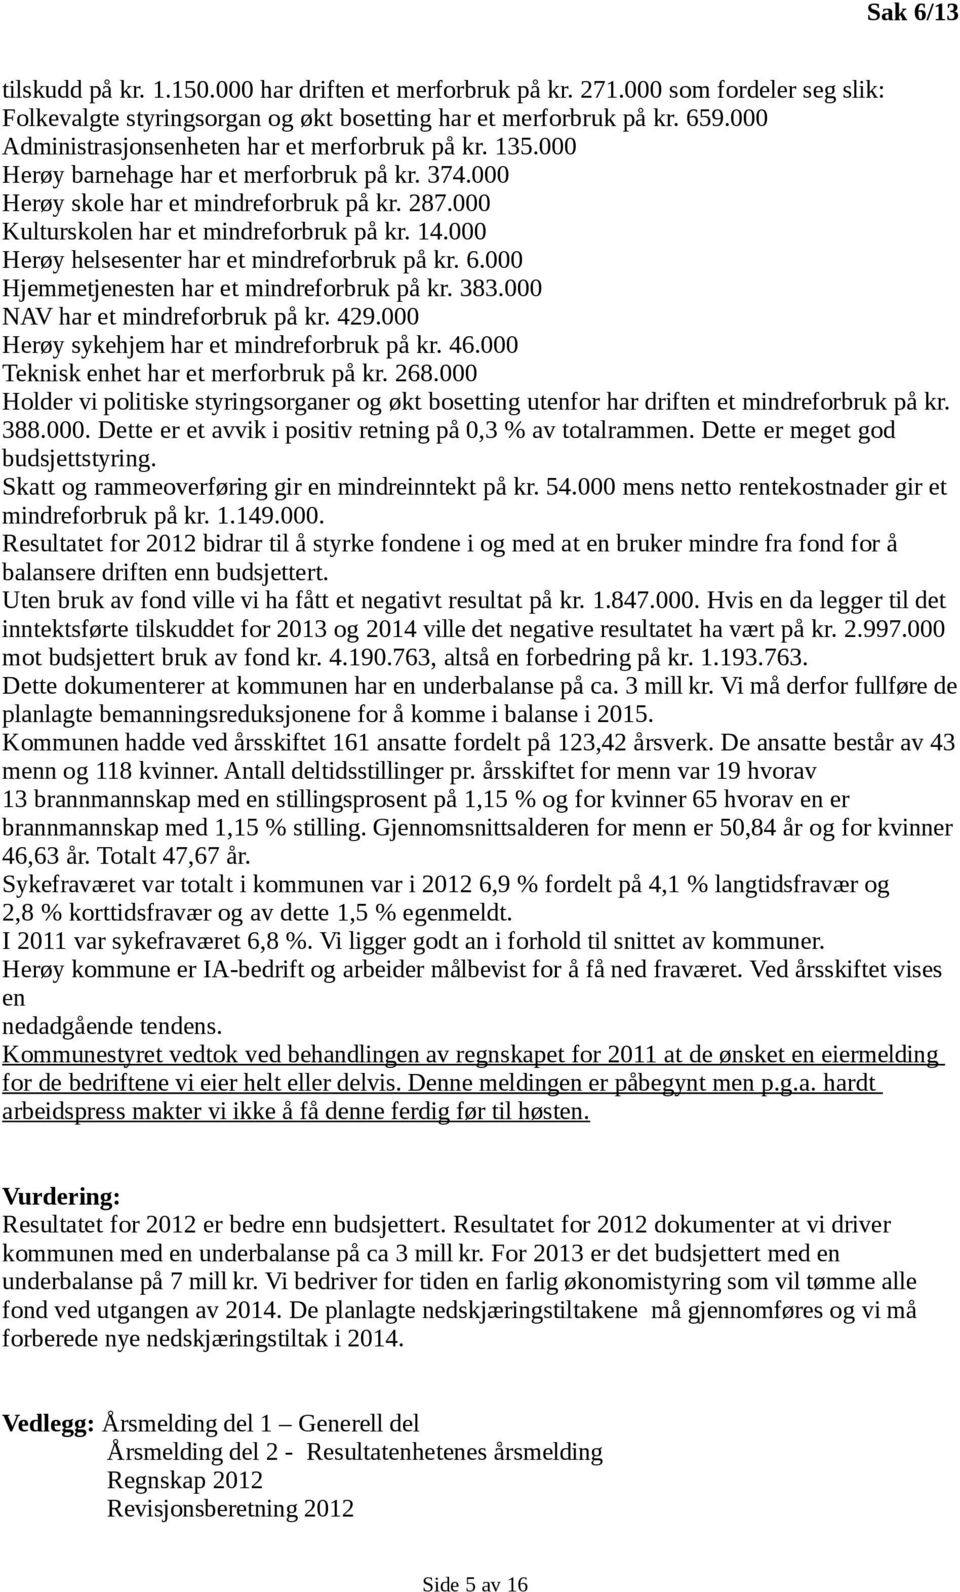 14.000 Herøy helsesenter har et mindreforbruk på kr. 6.000 Hjemmetjenesten har et mindreforbruk på kr. 383.000 NAV har et mindreforbruk på kr. 429.000 Herøy sykehjem har et mindreforbruk på kr. 46.